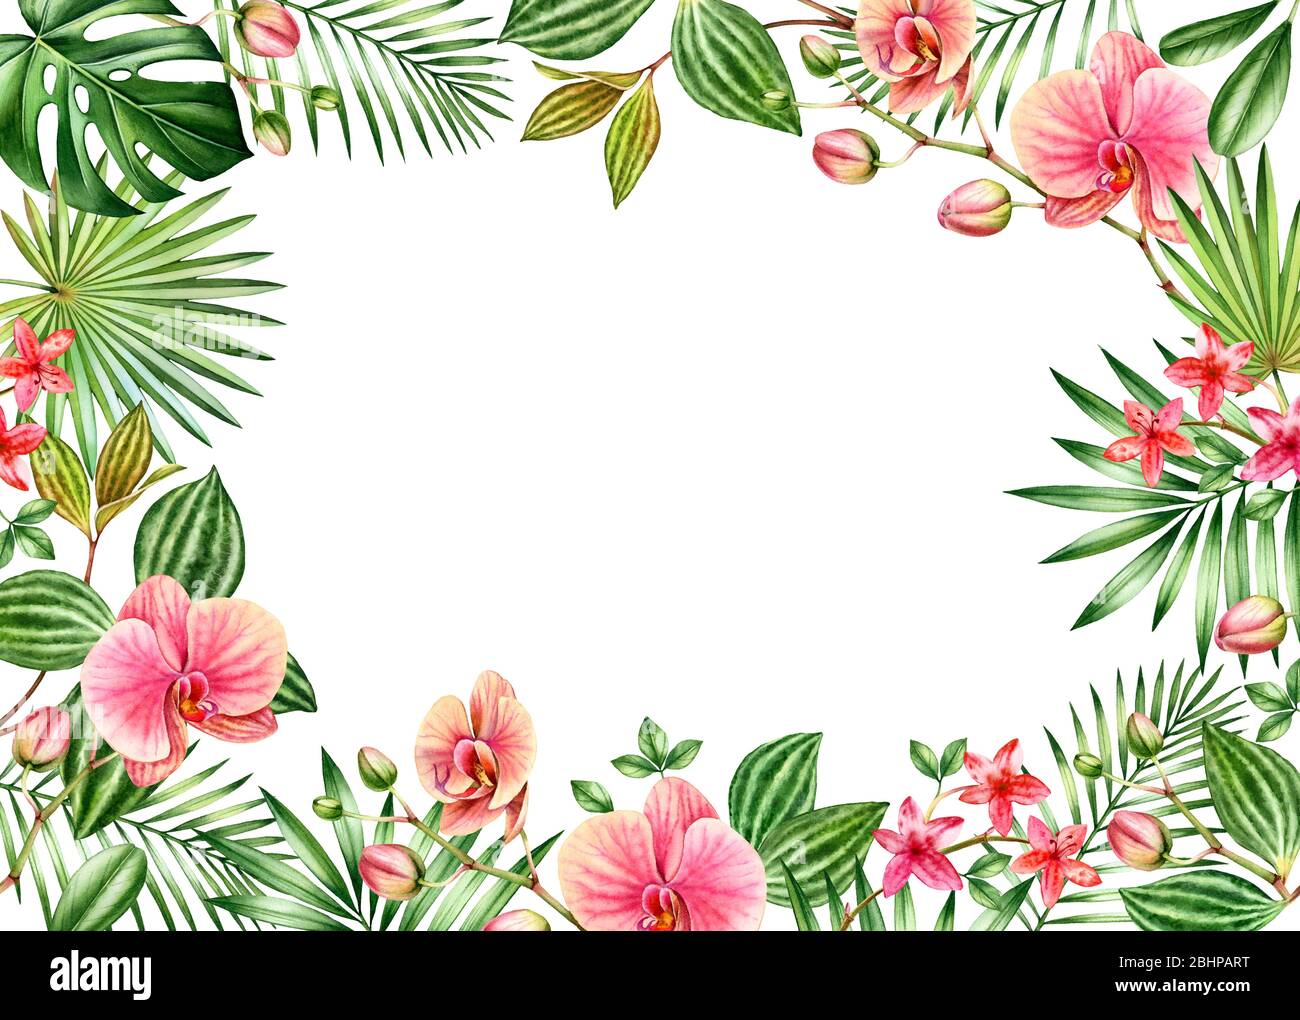 Fond fleuri aquarelle. Cadre horizontal avec emplacement pour le texte. Fleurs d'orchidée orange et feuilles de palmier. Bannière tropicale peinte à la main. Botanique Banque D'Images